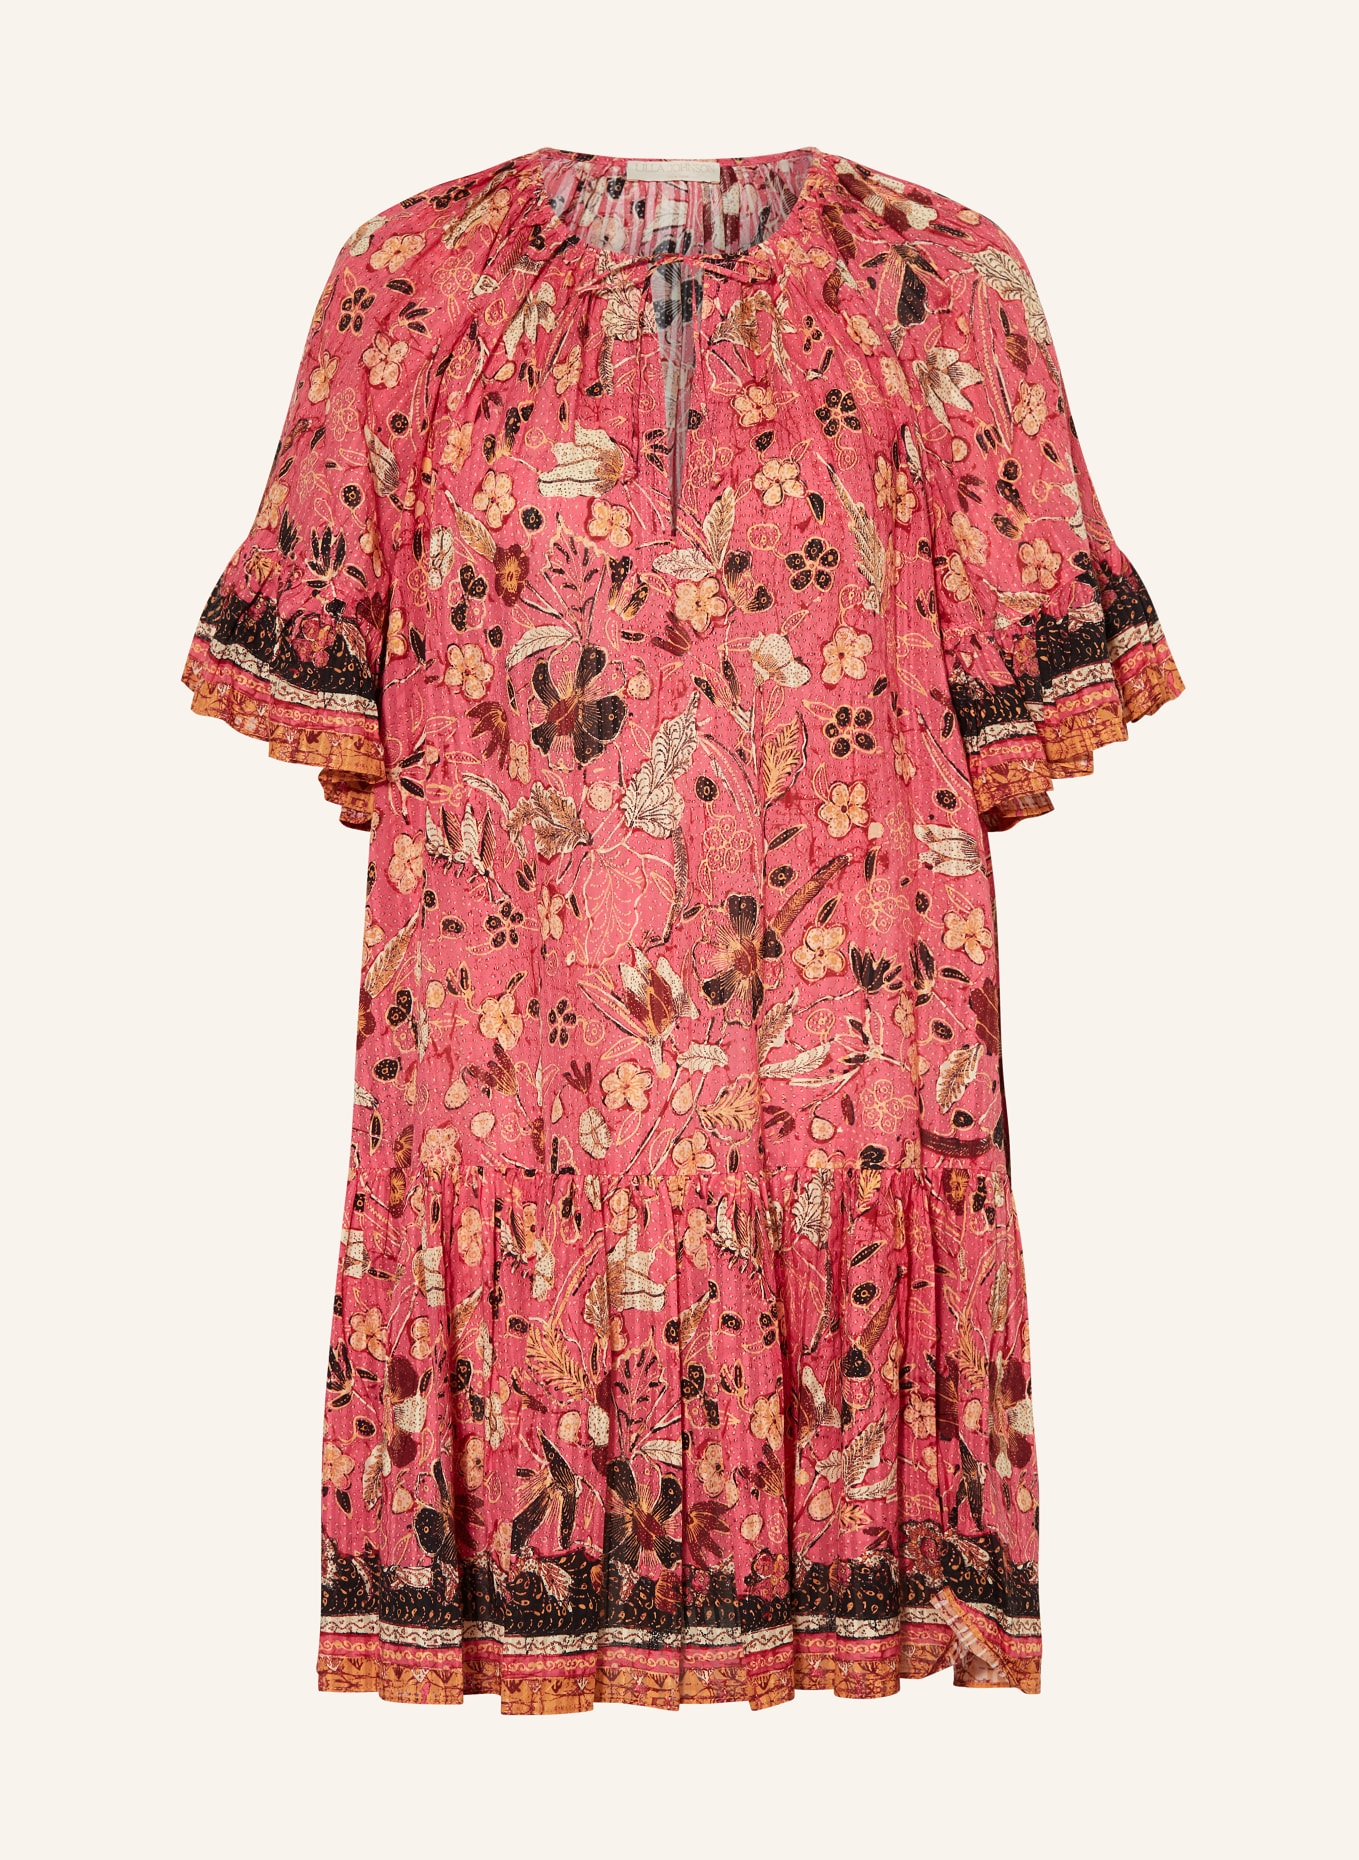 ULLA JOHNSON Kleid MALIE mit Volants, Farbe: PINK/ DUNKELROT/ SCHWARZ (Bild 1)